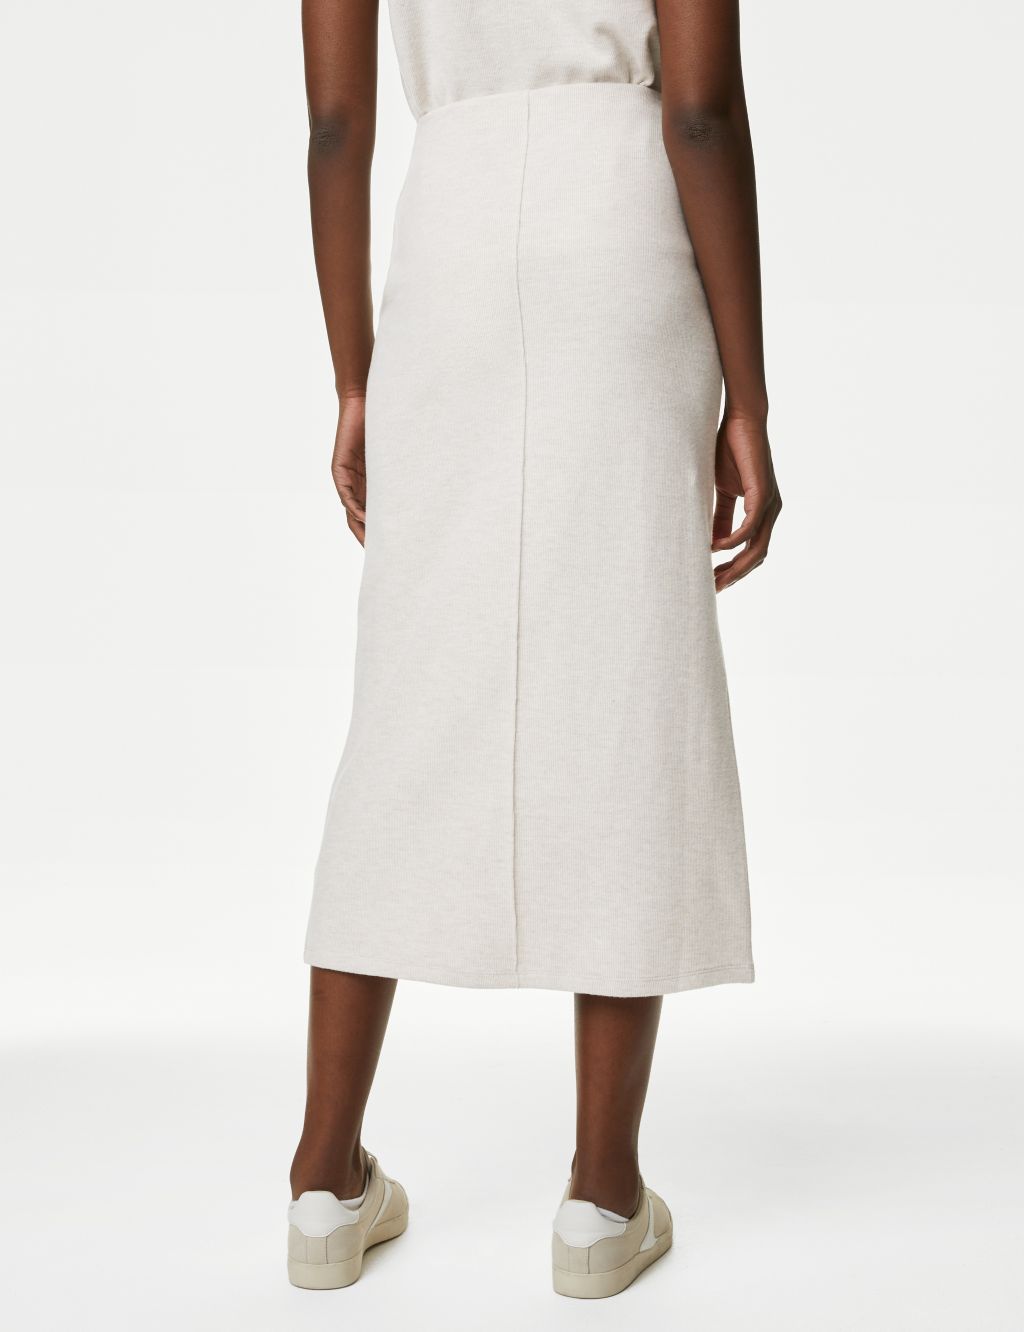 Cotton Blend Midaxi Skirt 5 of 5